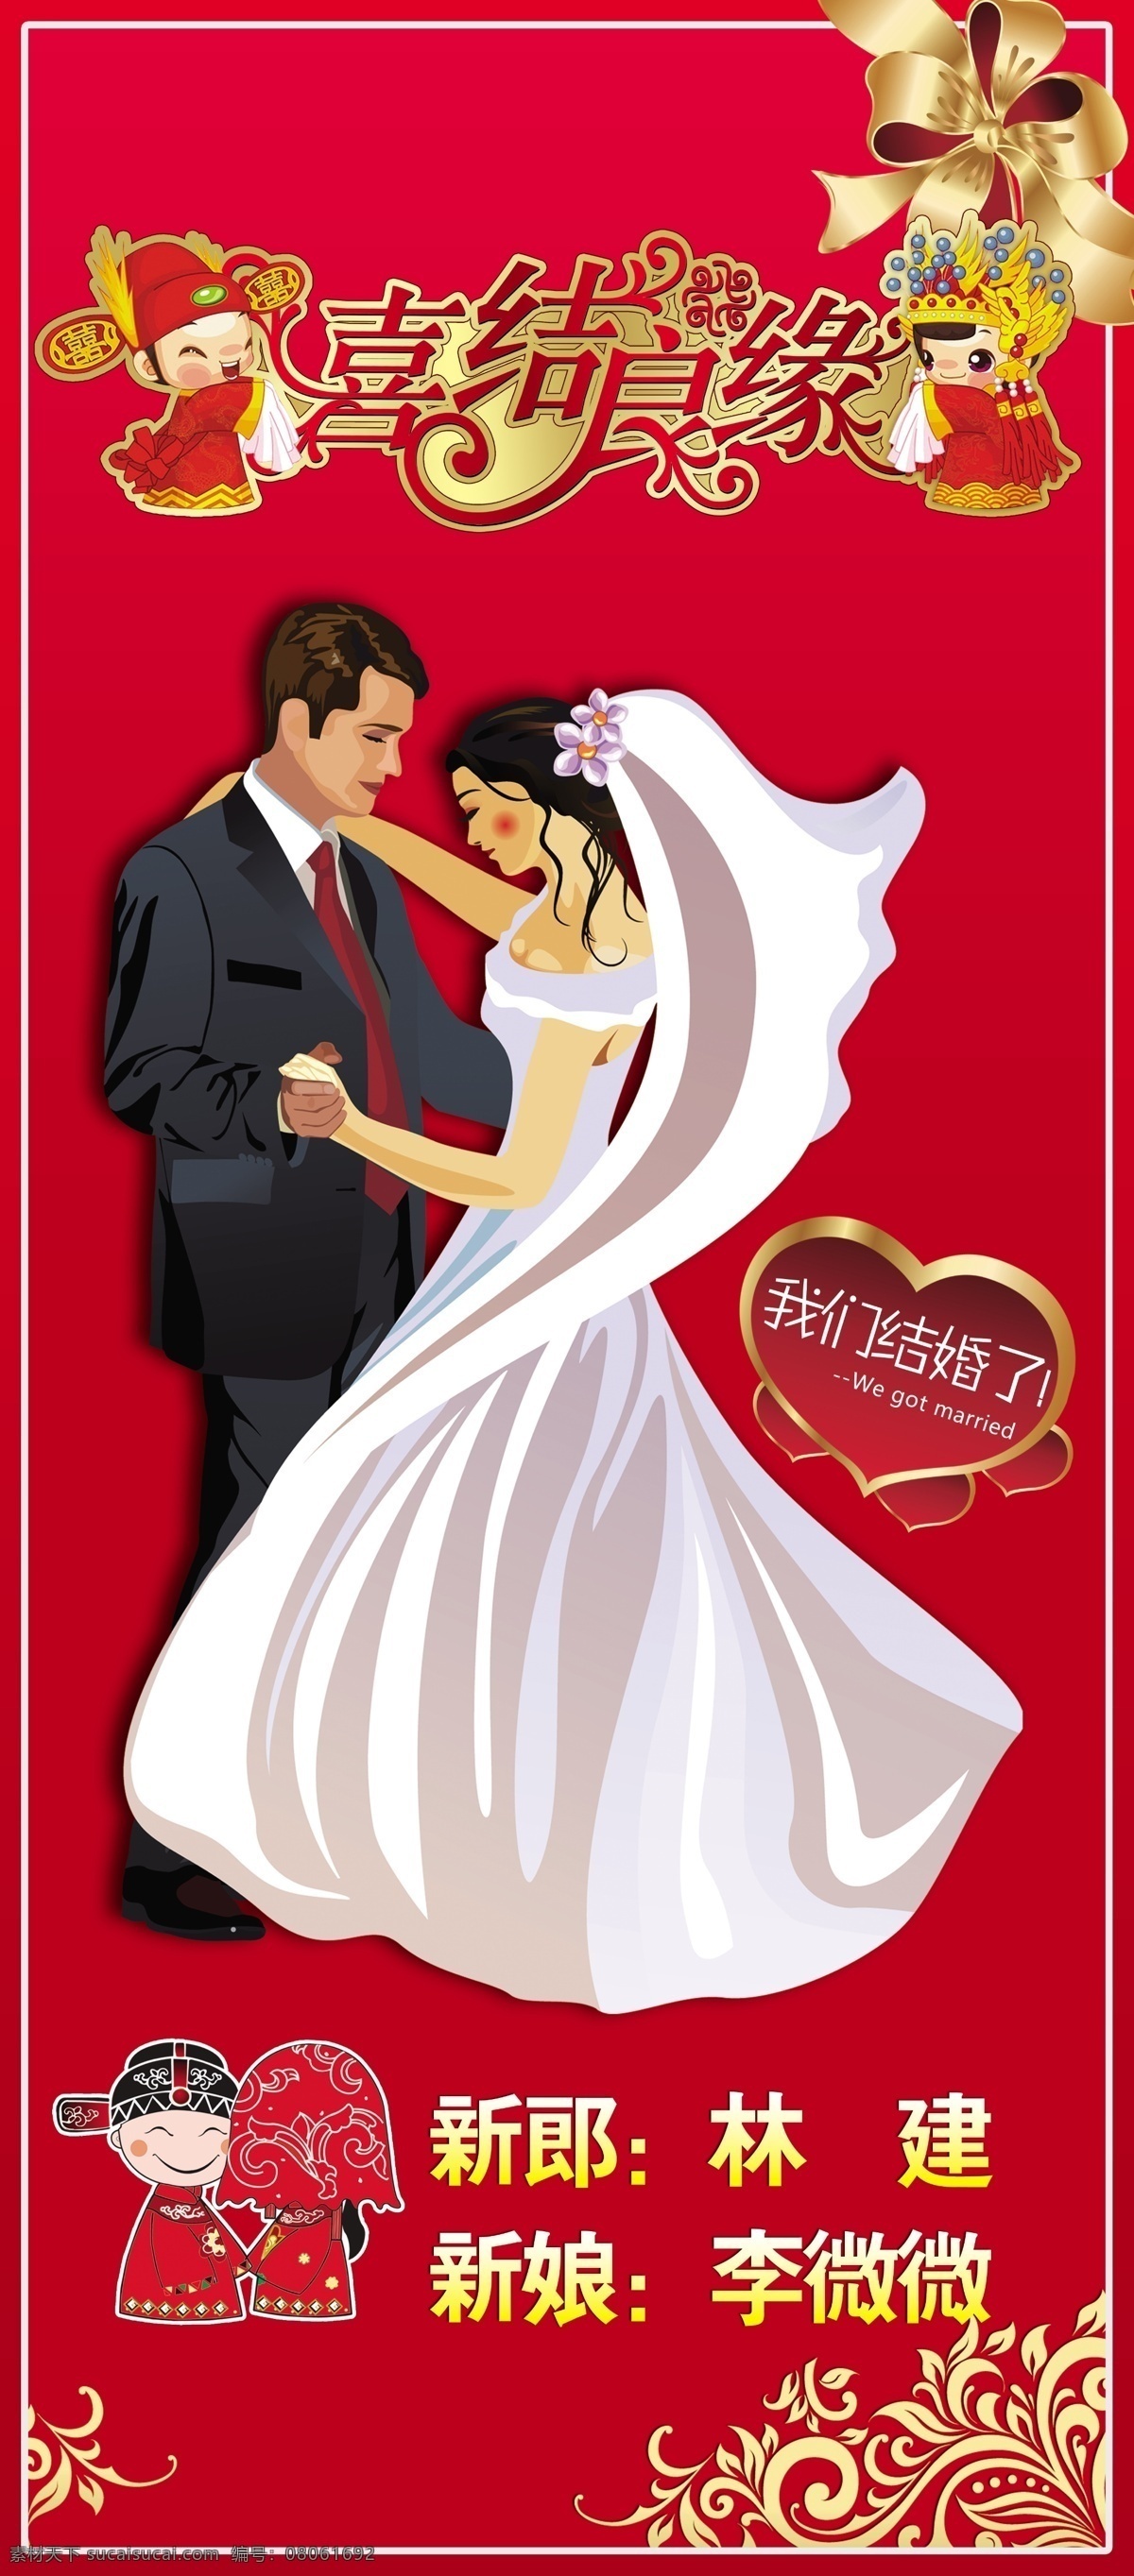 x展架 广告设计模板 红色 婚庆 婚庆x展架 结婚 卡通 易拉宝 祝福 喜庆 我们结婚了 源文件 其他海报设计